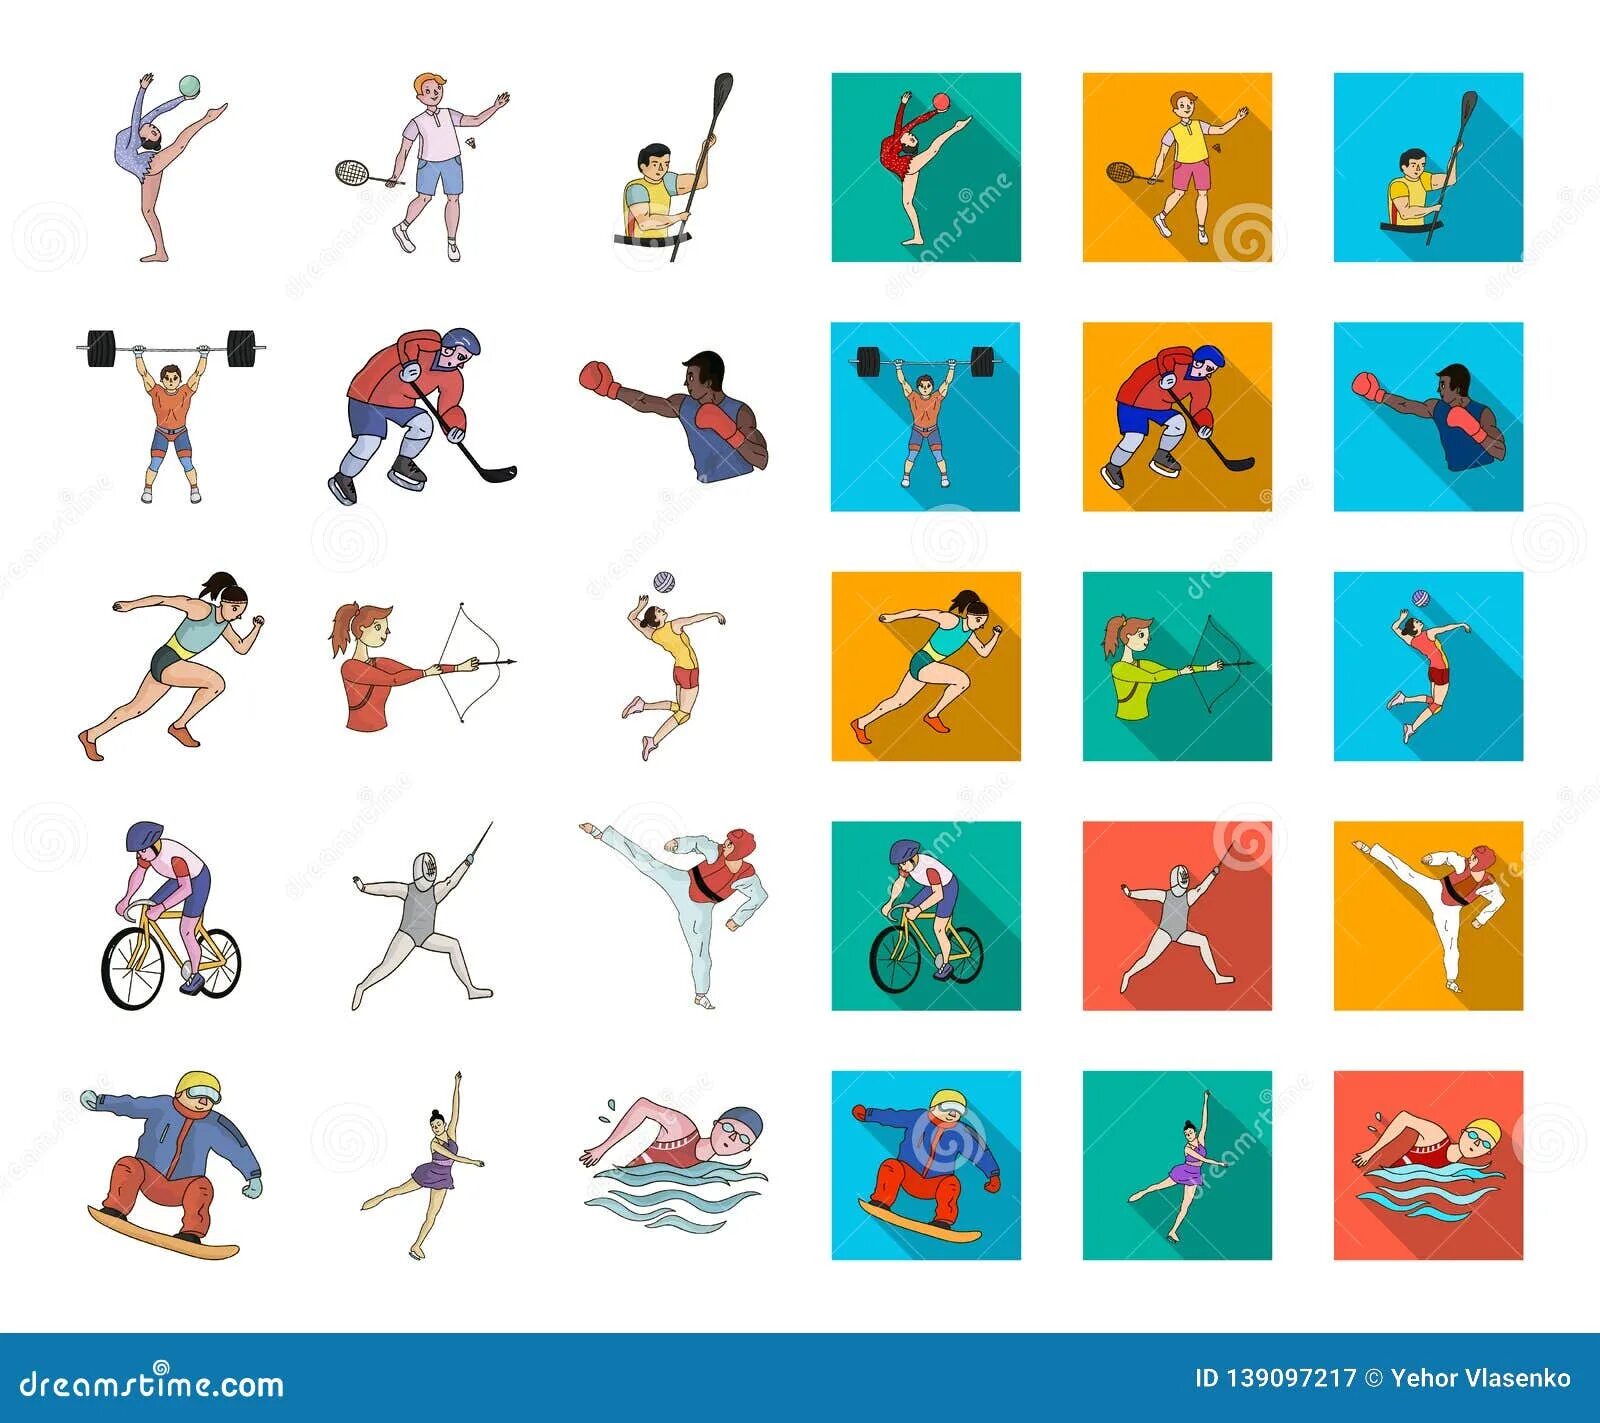 Атрибуты к видам спорта. Изображения видов спорта. Атрибуты для летних видов спорта для детей. Знаки видов спорта.